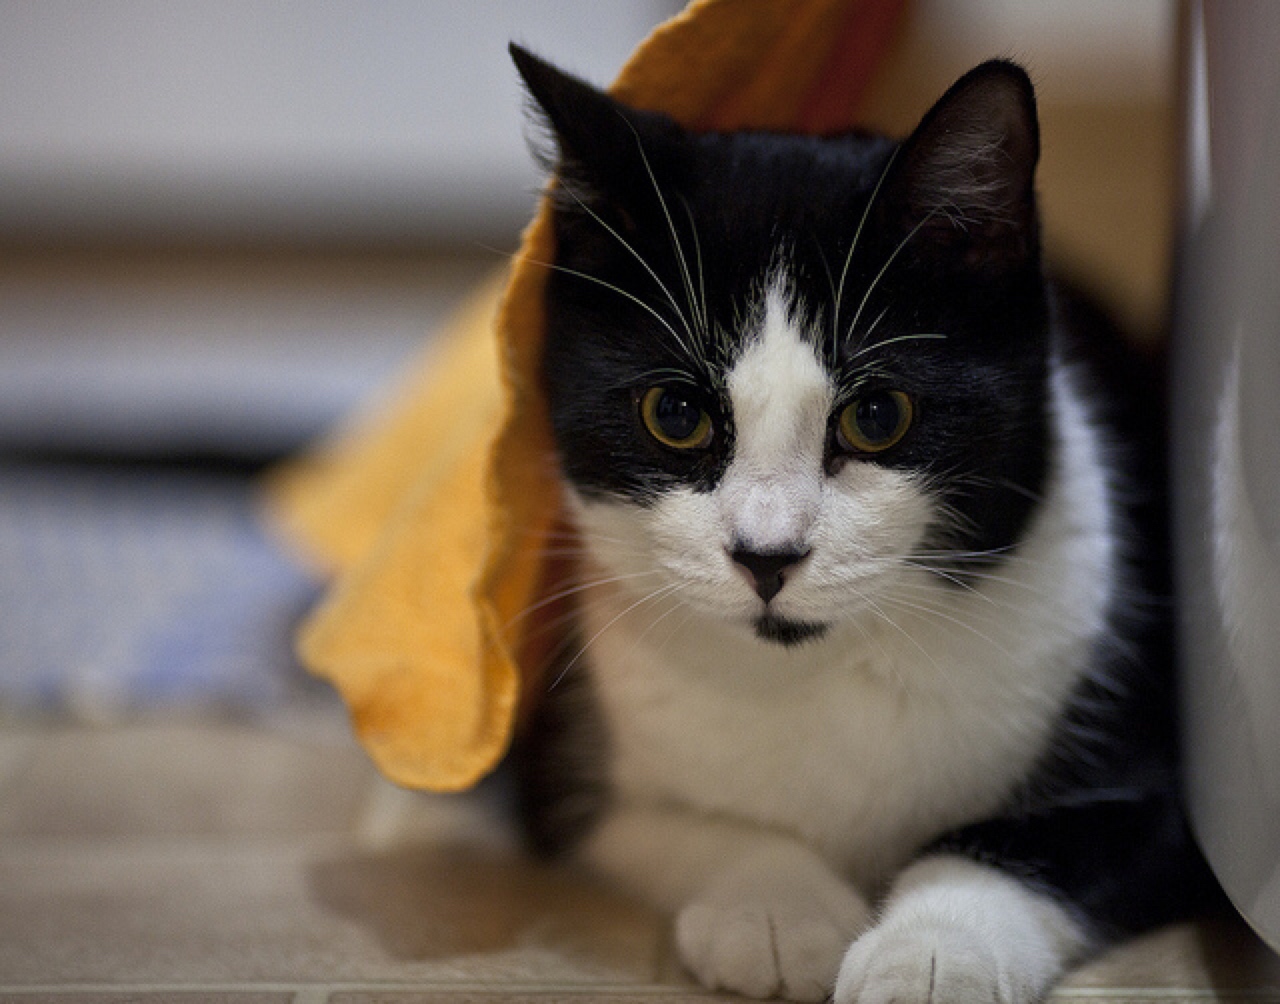 cat wet towel